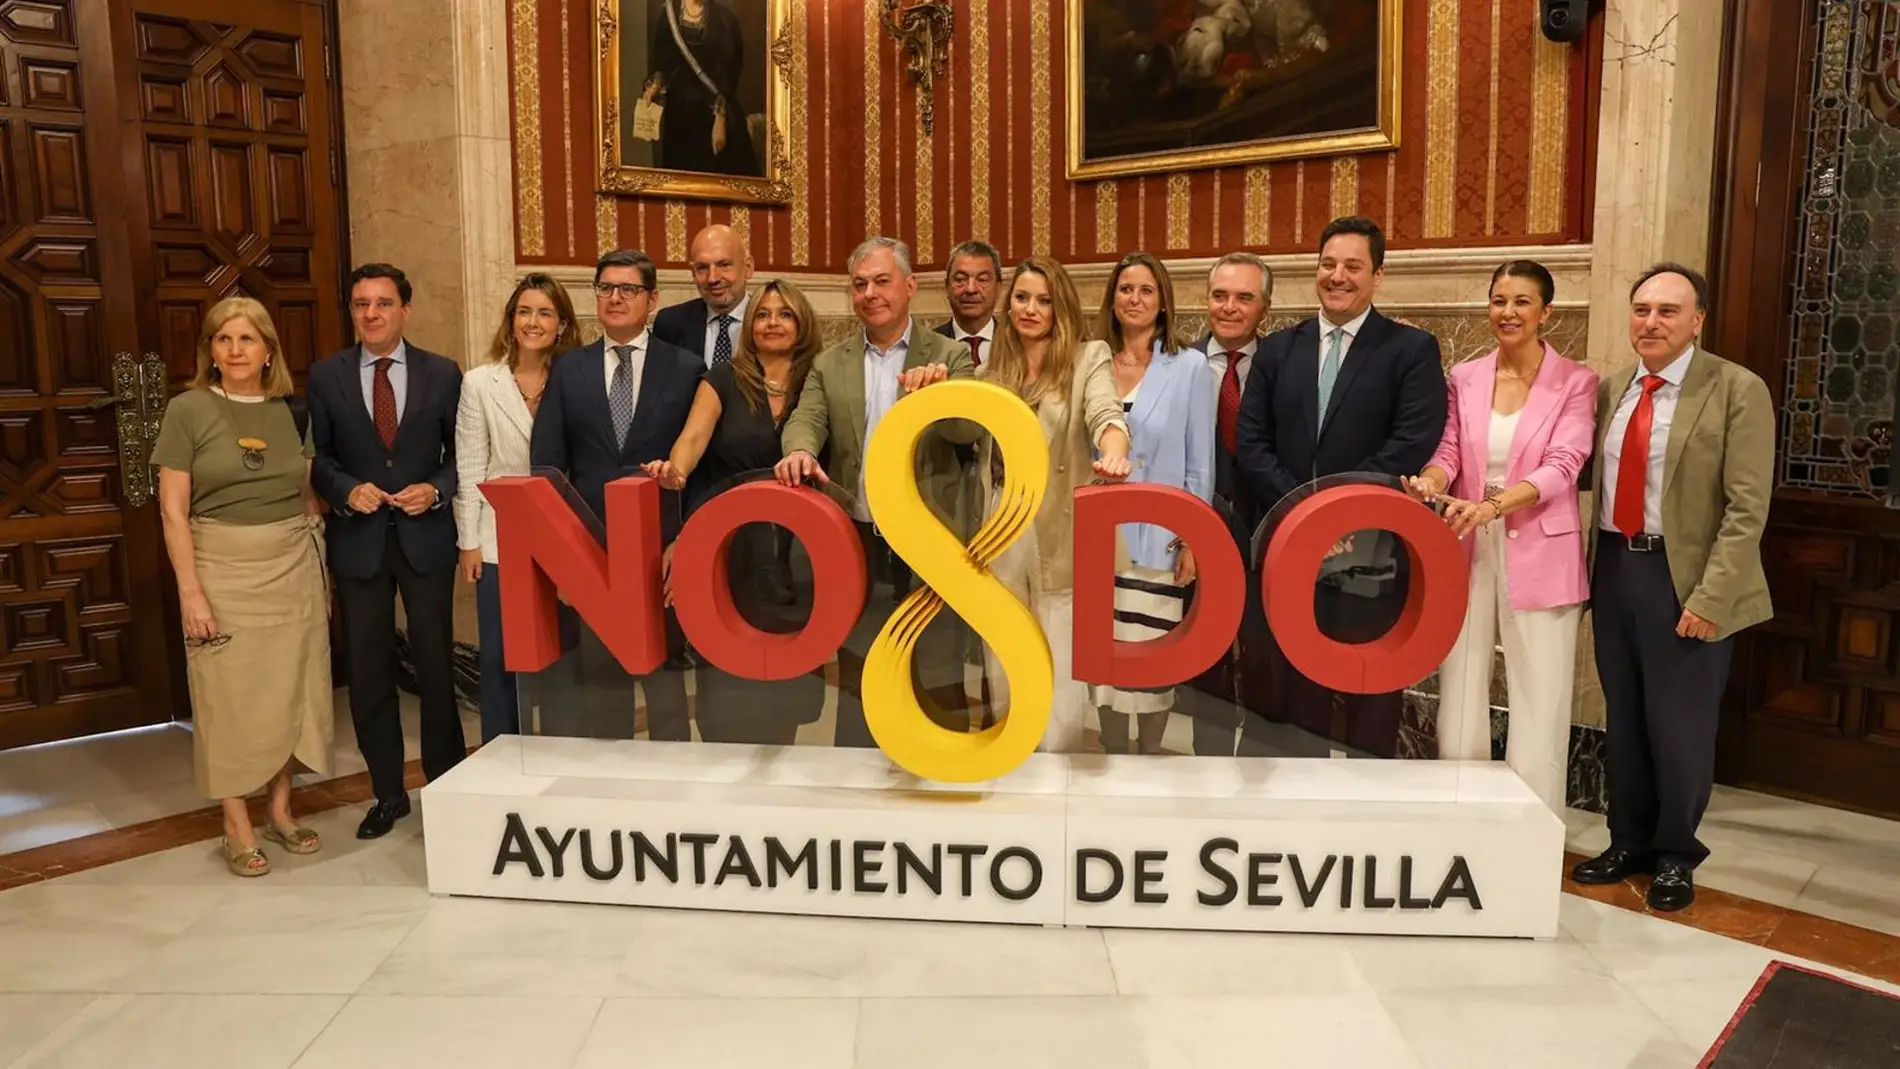 El alcalde de Sevilla, Jose Luis Sanz, hace balance del primer año de gobierno y dice haber cumplido el 33% del programa "pese al bloqueo"